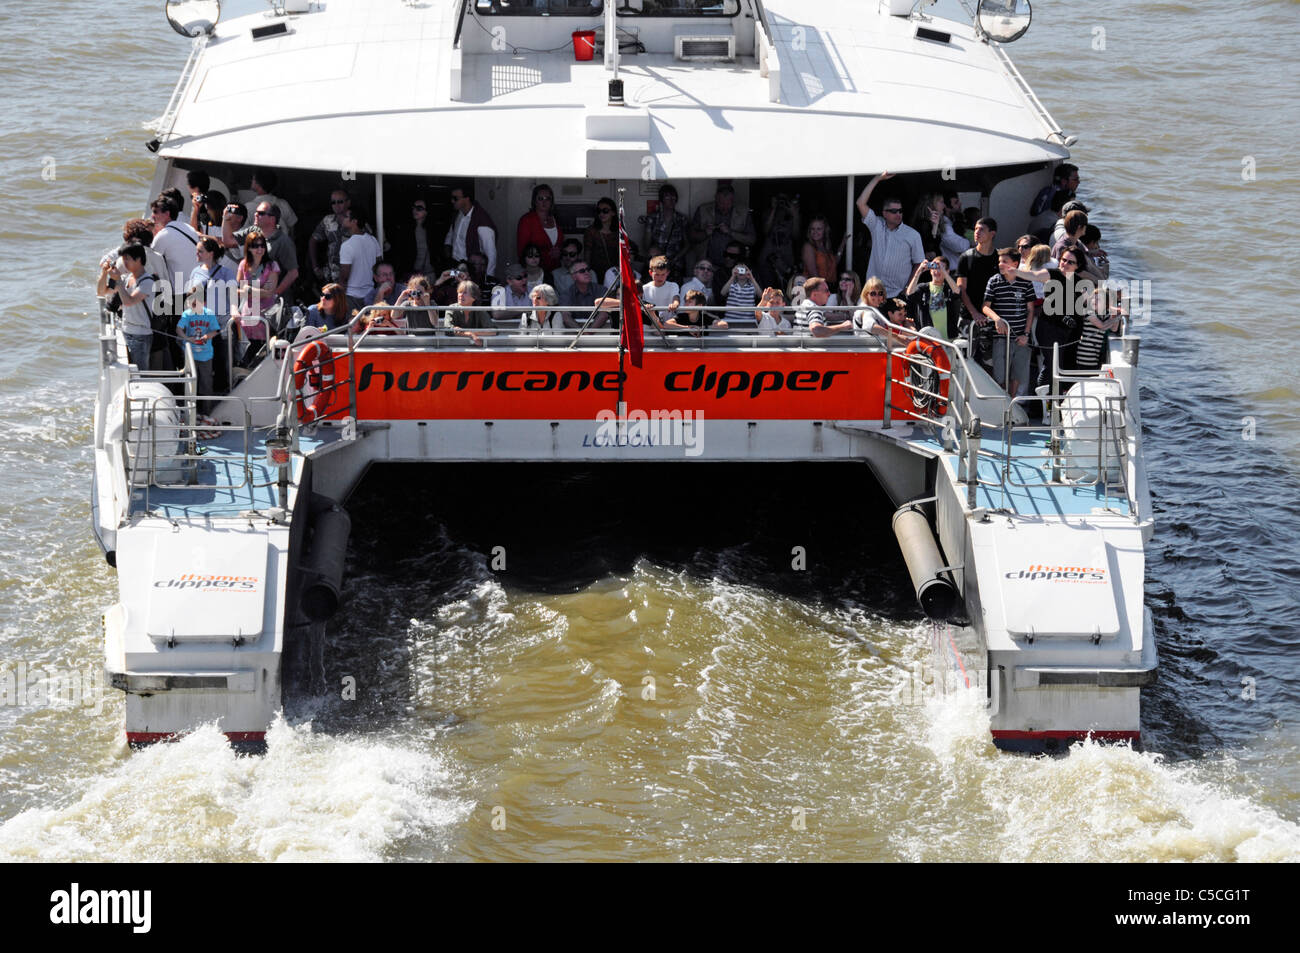 Foule de passagers voyageant sur la poupe de la Tamise Clipper Catamaran un service de bus fluvial de transport en commun sur Londres Célèbre rivière Angleterre Royaume-Uni Banque D'Images